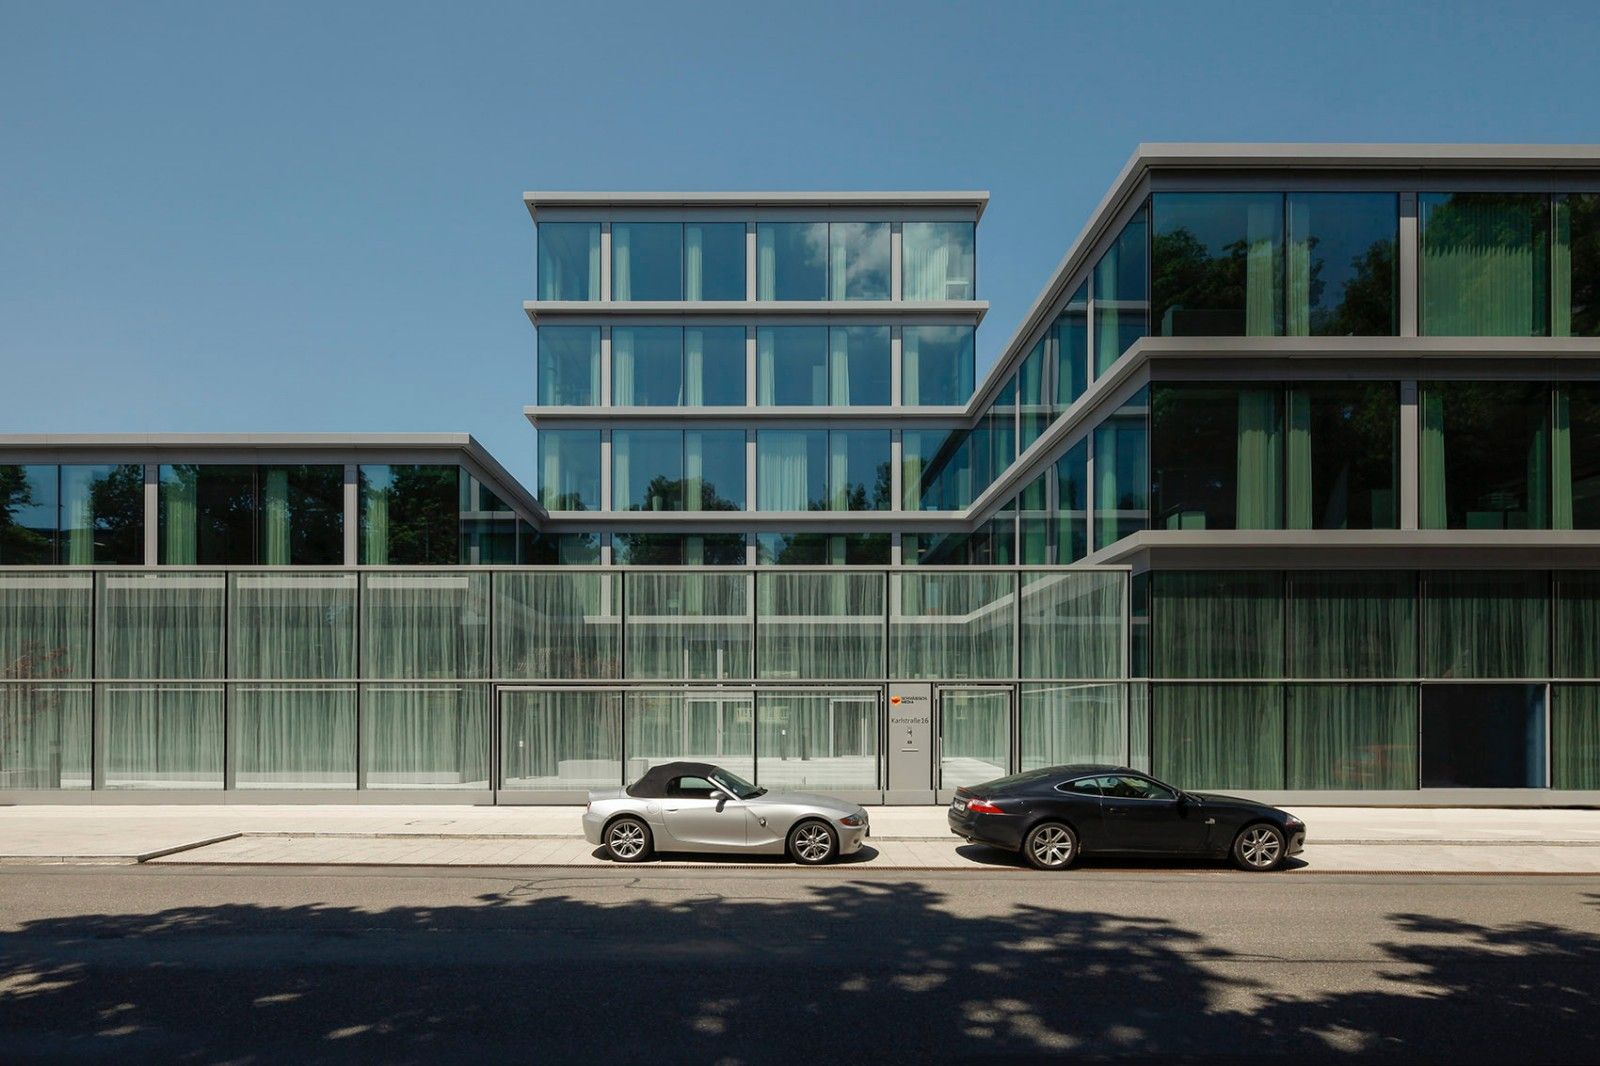 Schwäbisch Media칫¥¹ / Wiel Arets Architects